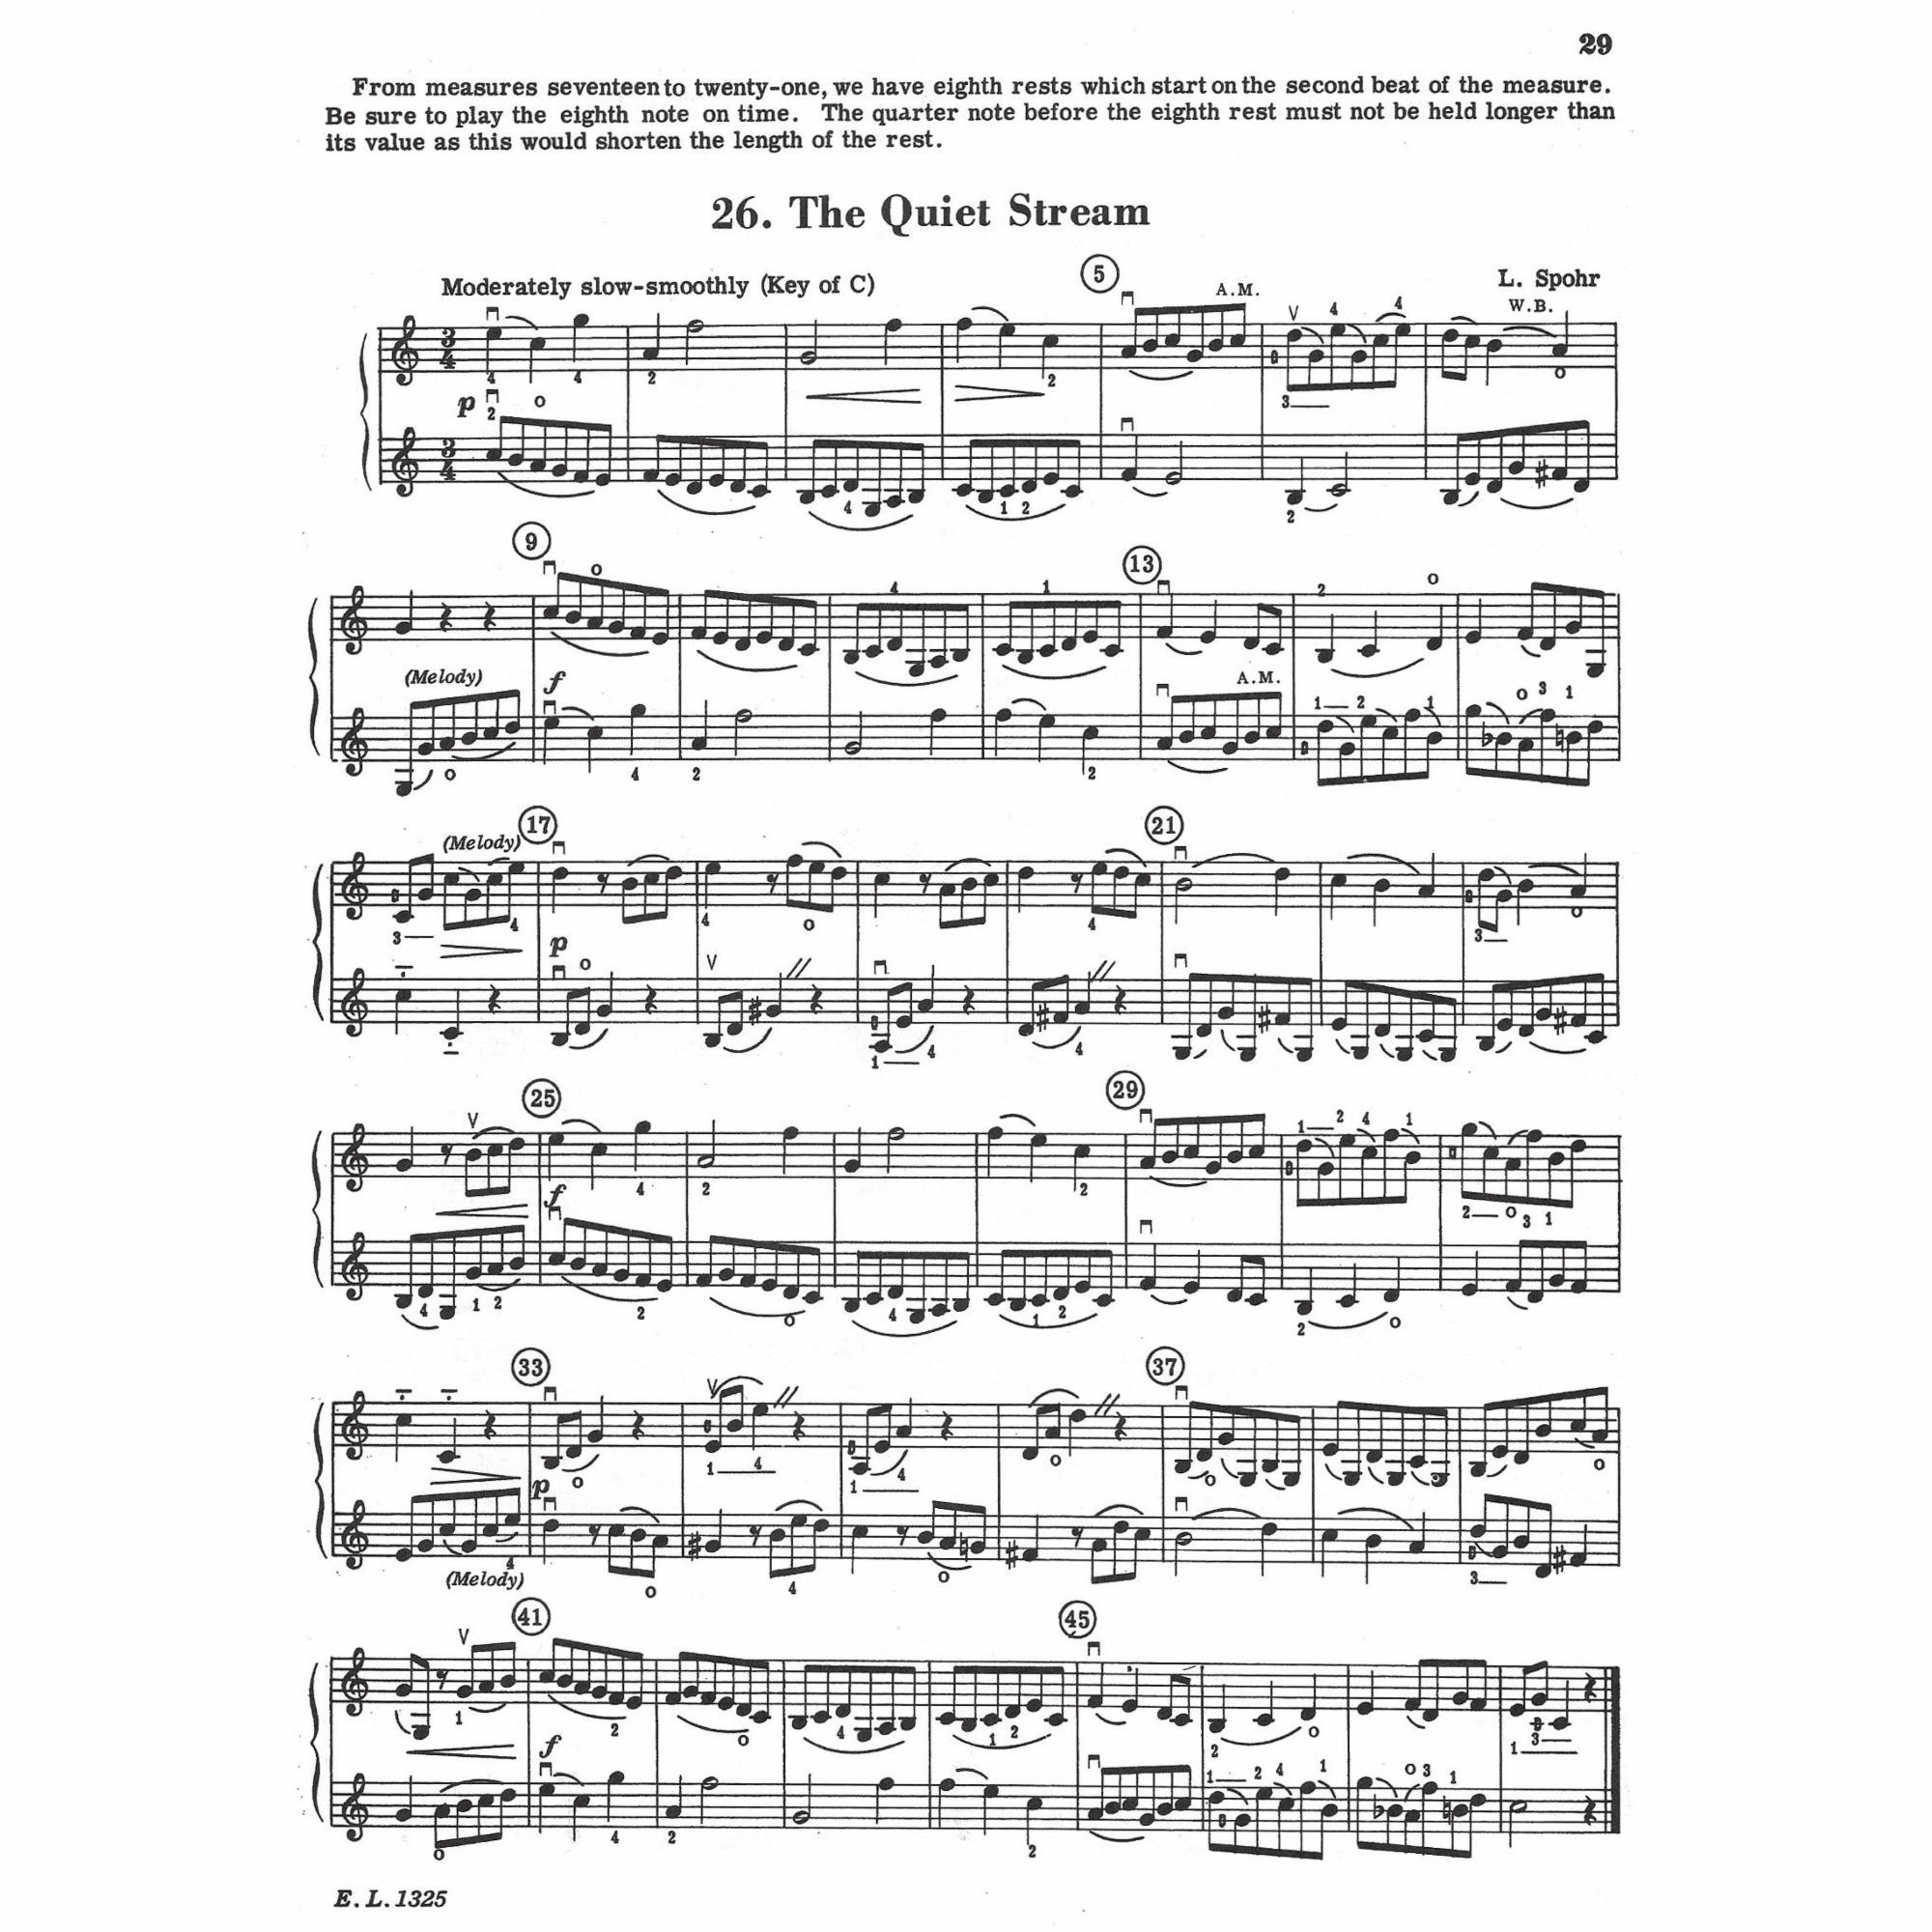 Sample: Violin (Pg. 29)